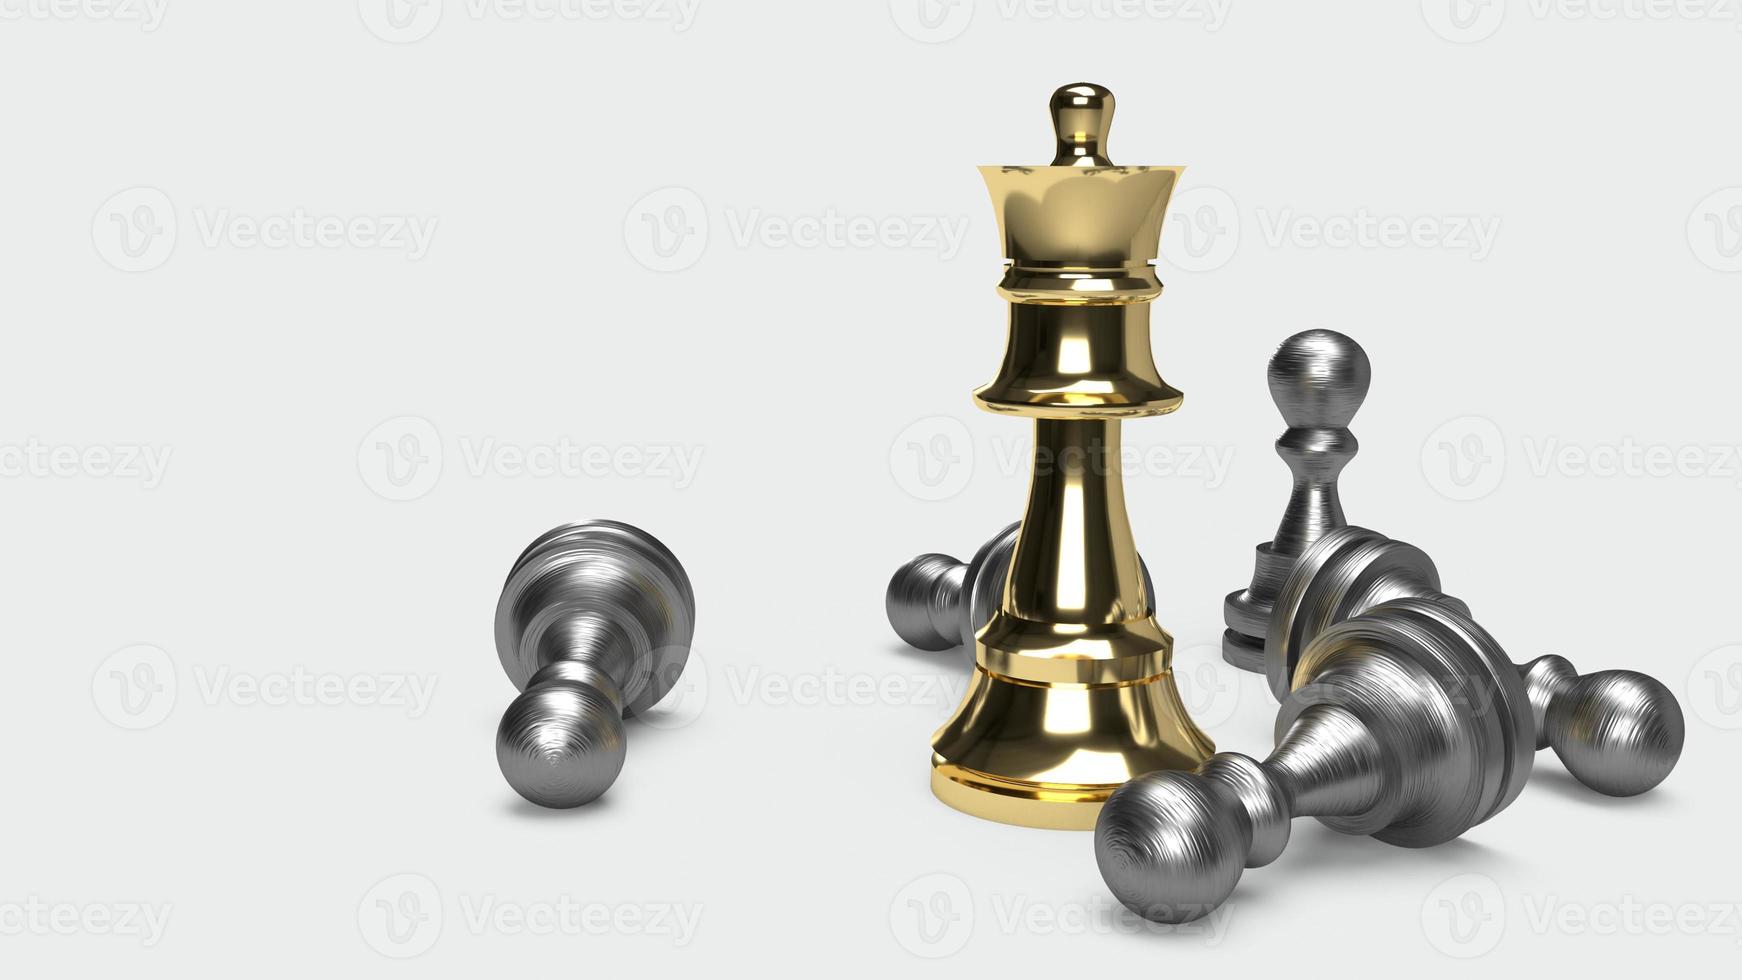 schachspiel 3d-rendering abstrakte idee für geschäftsinhalte. foto